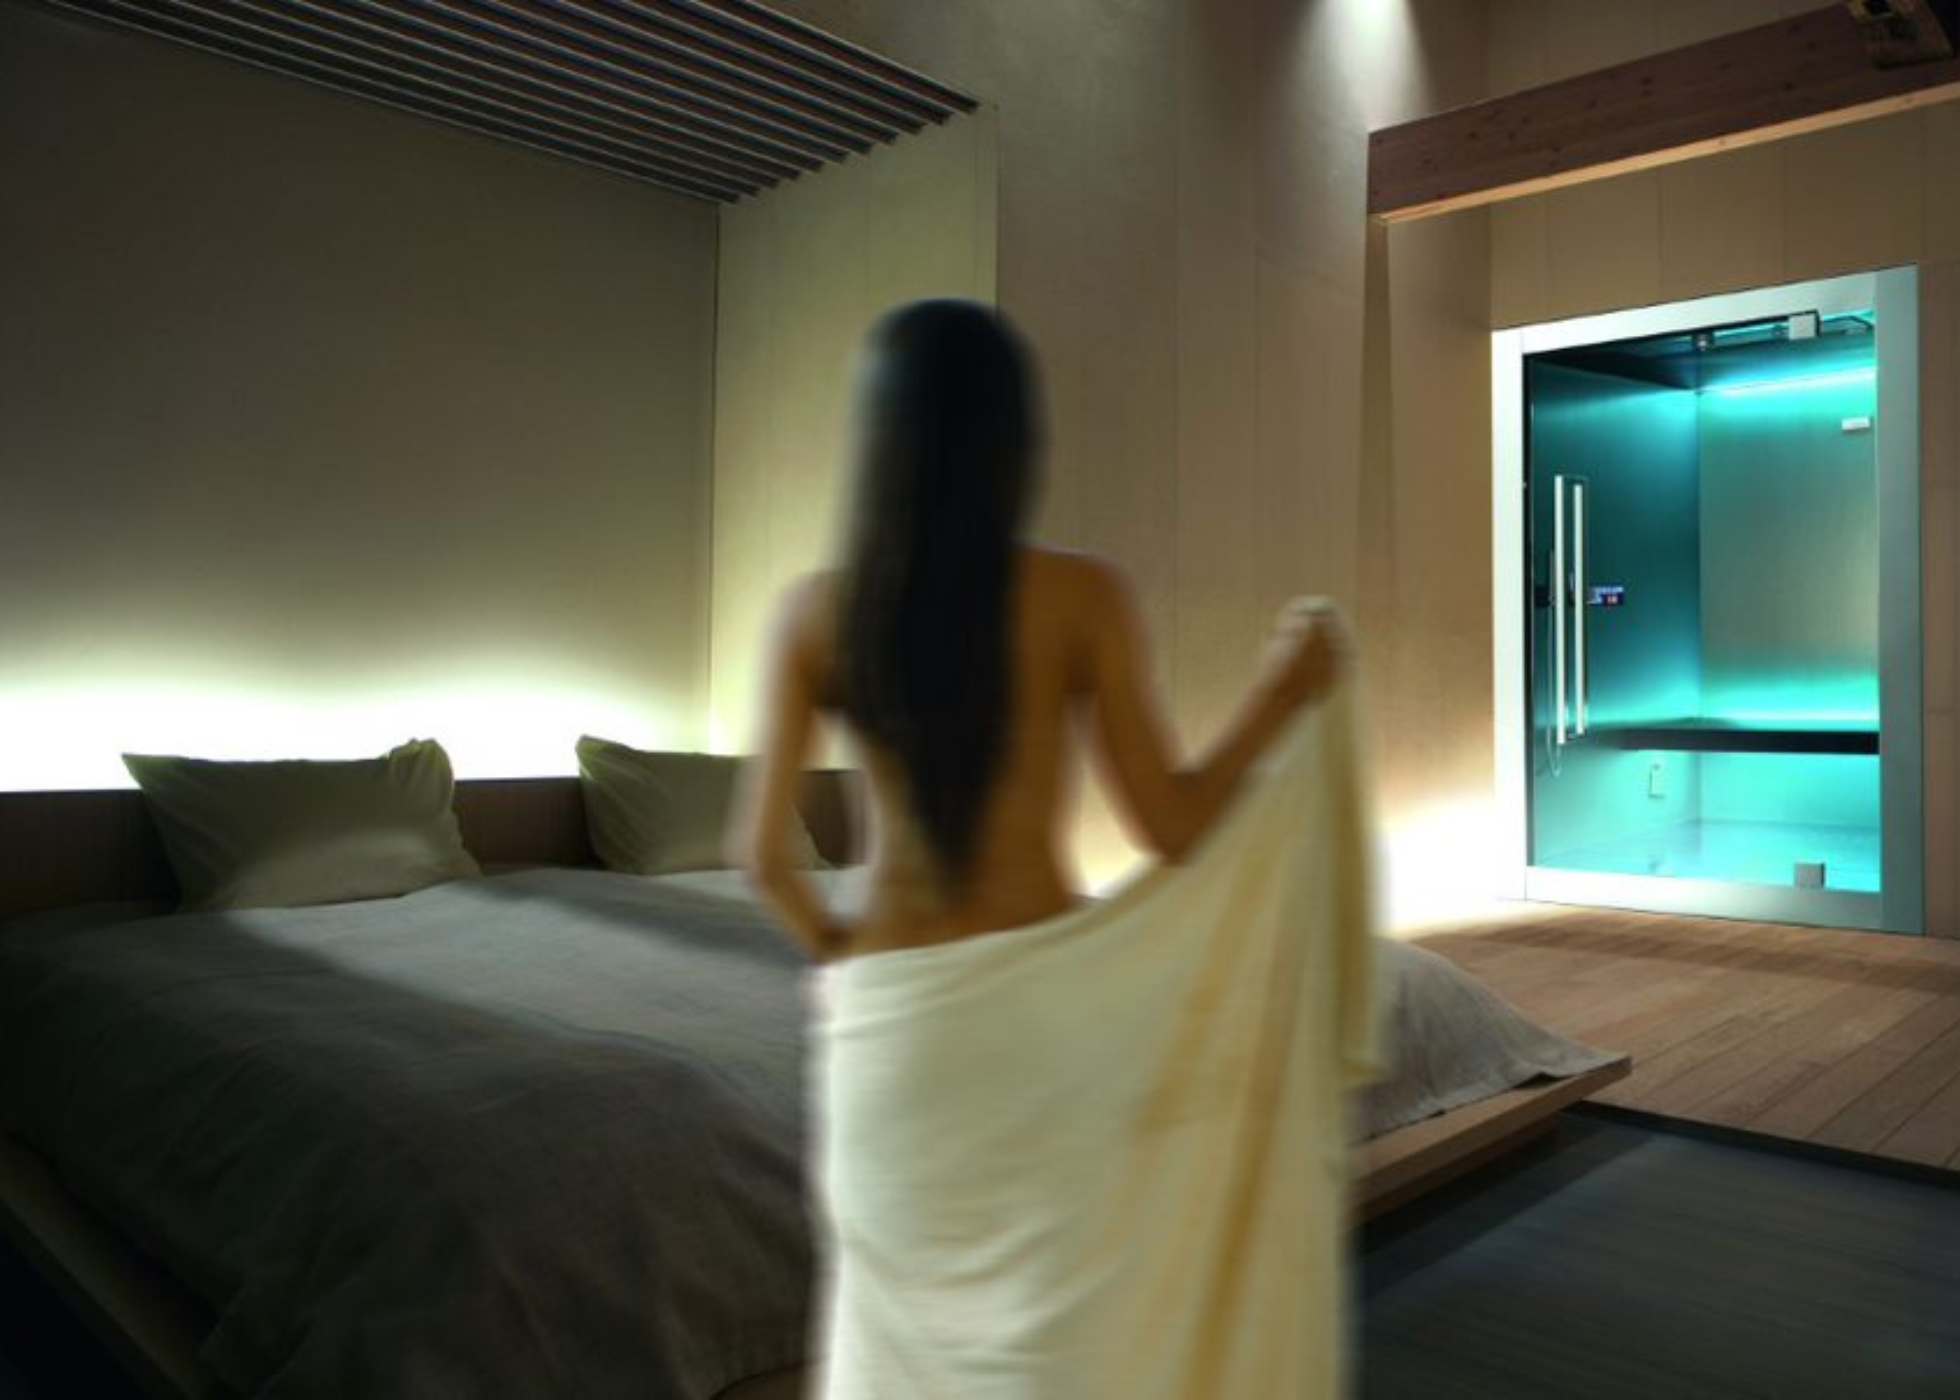  La spa in camera soddisfa il desiderio diffuso di vivere un benessere su misura